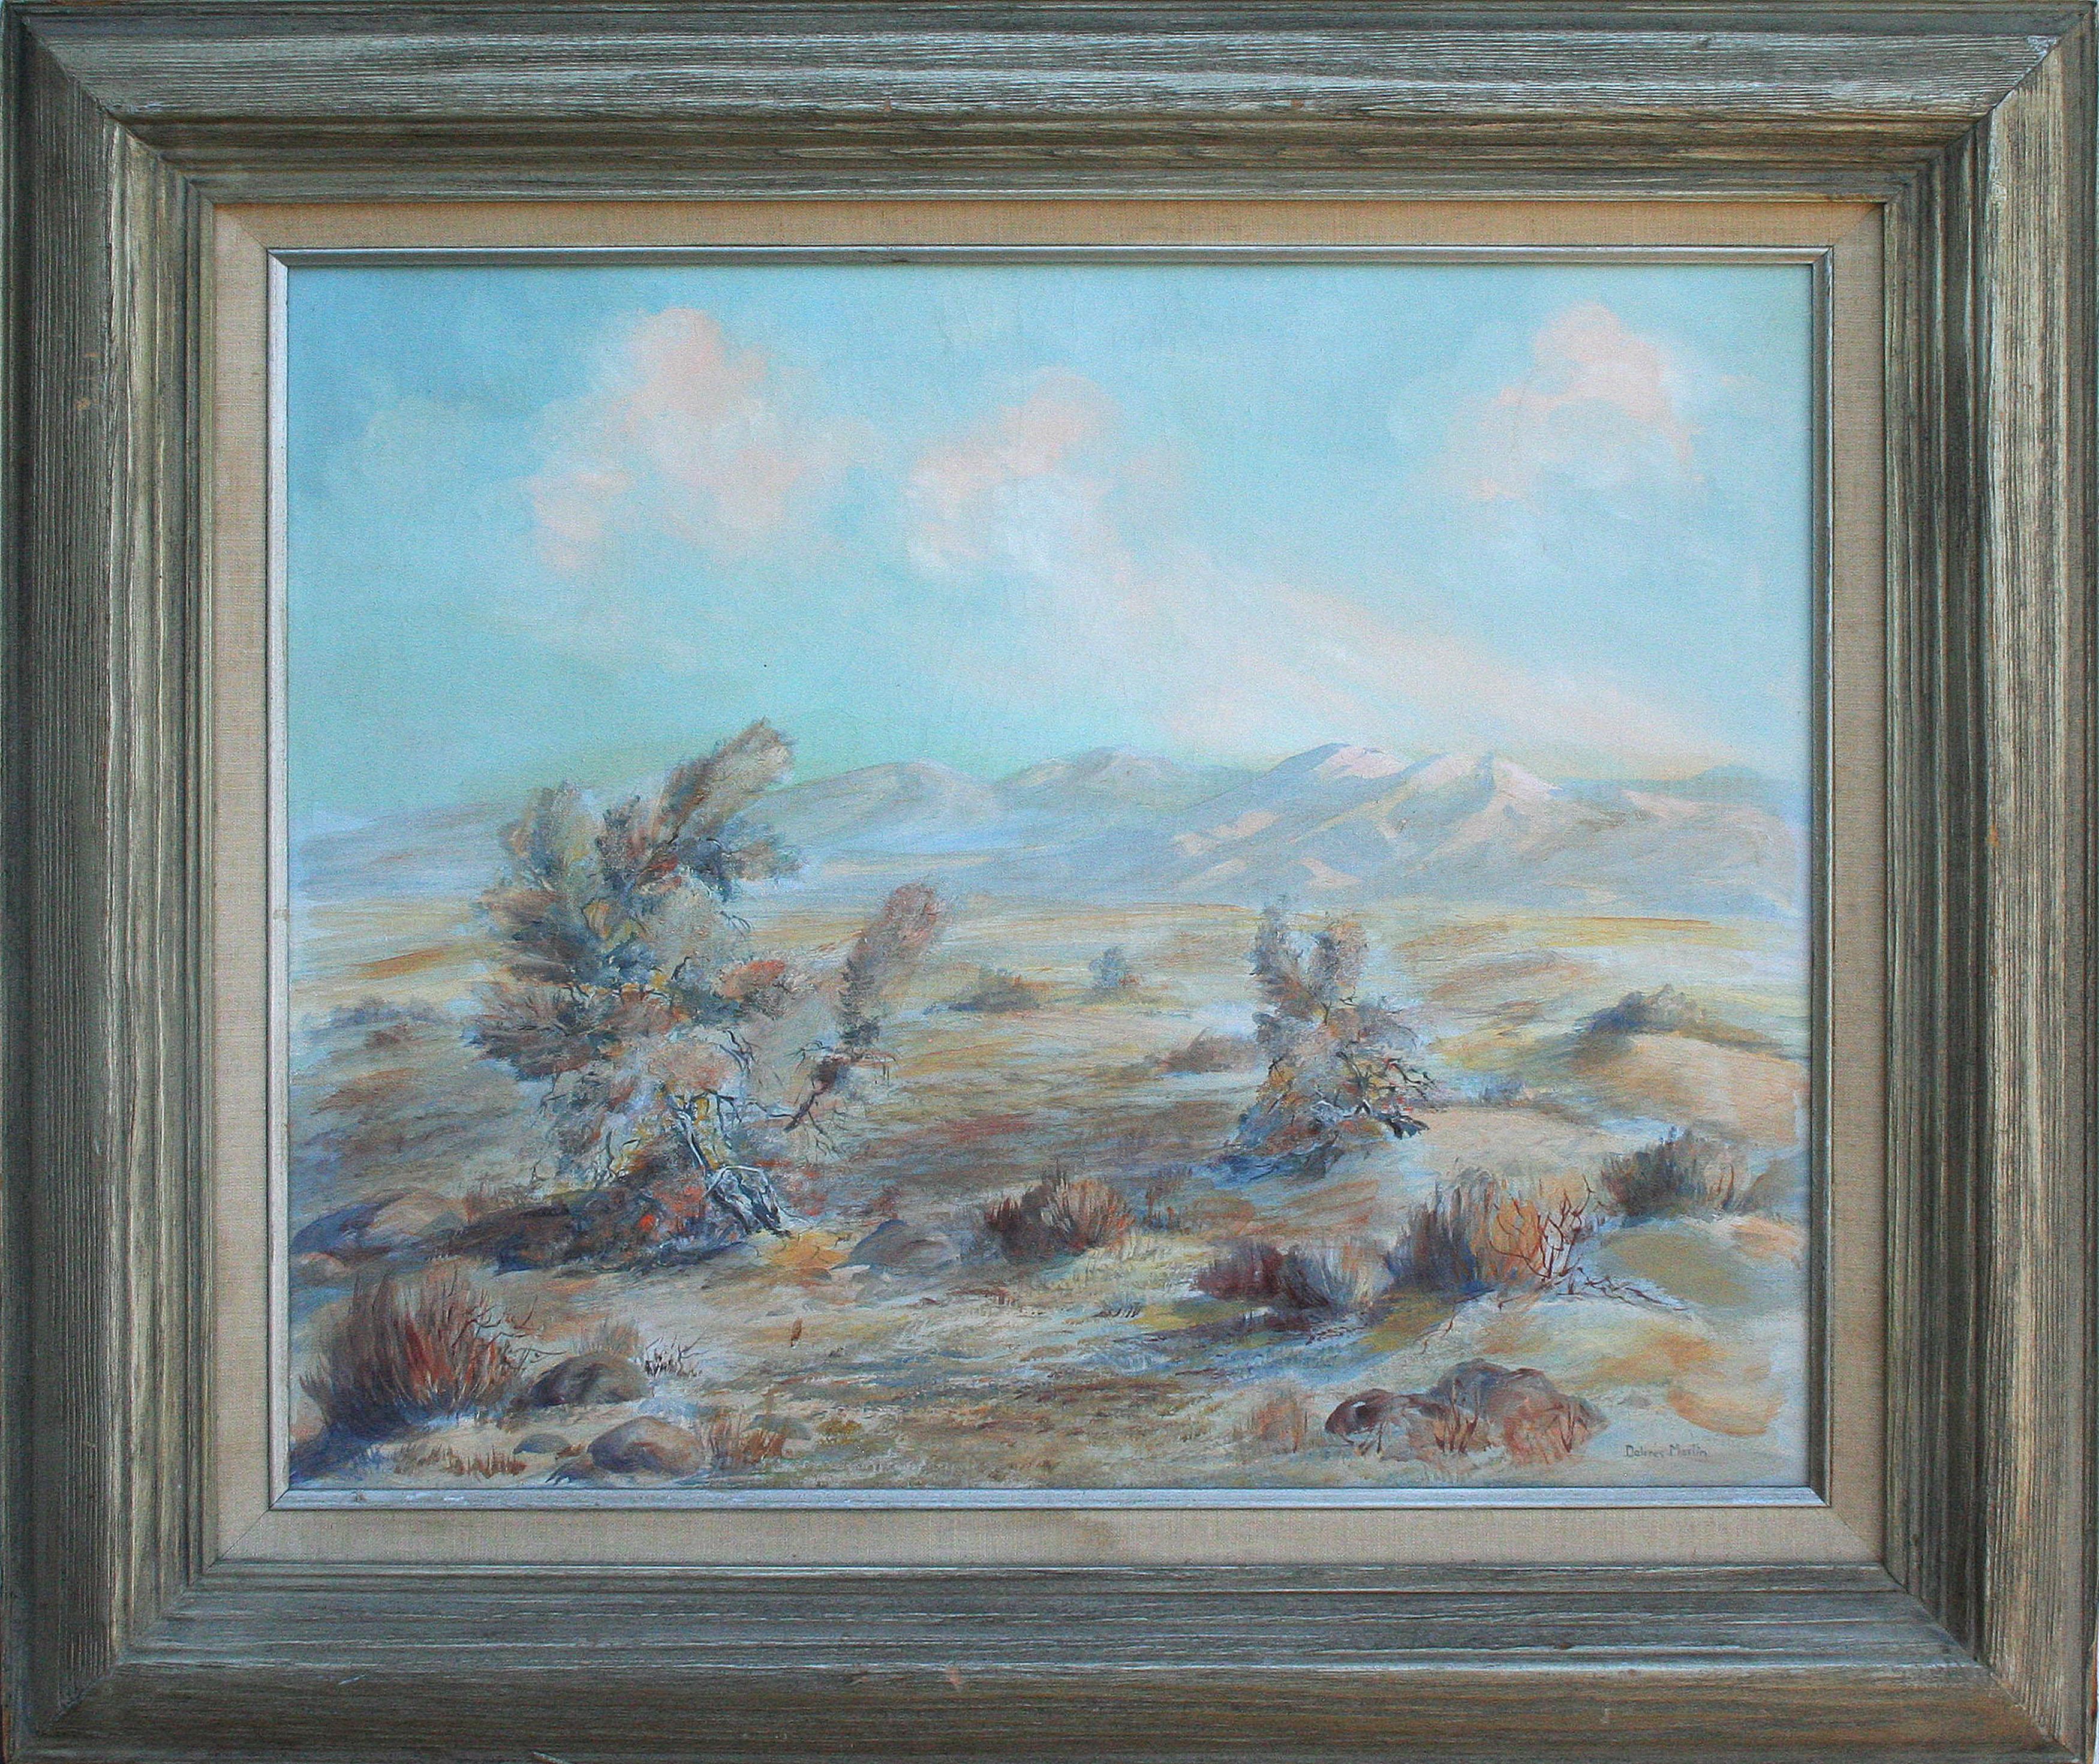  Dolores Martin Landscape Painting - Mid Century Palm Springs Desert Landscape